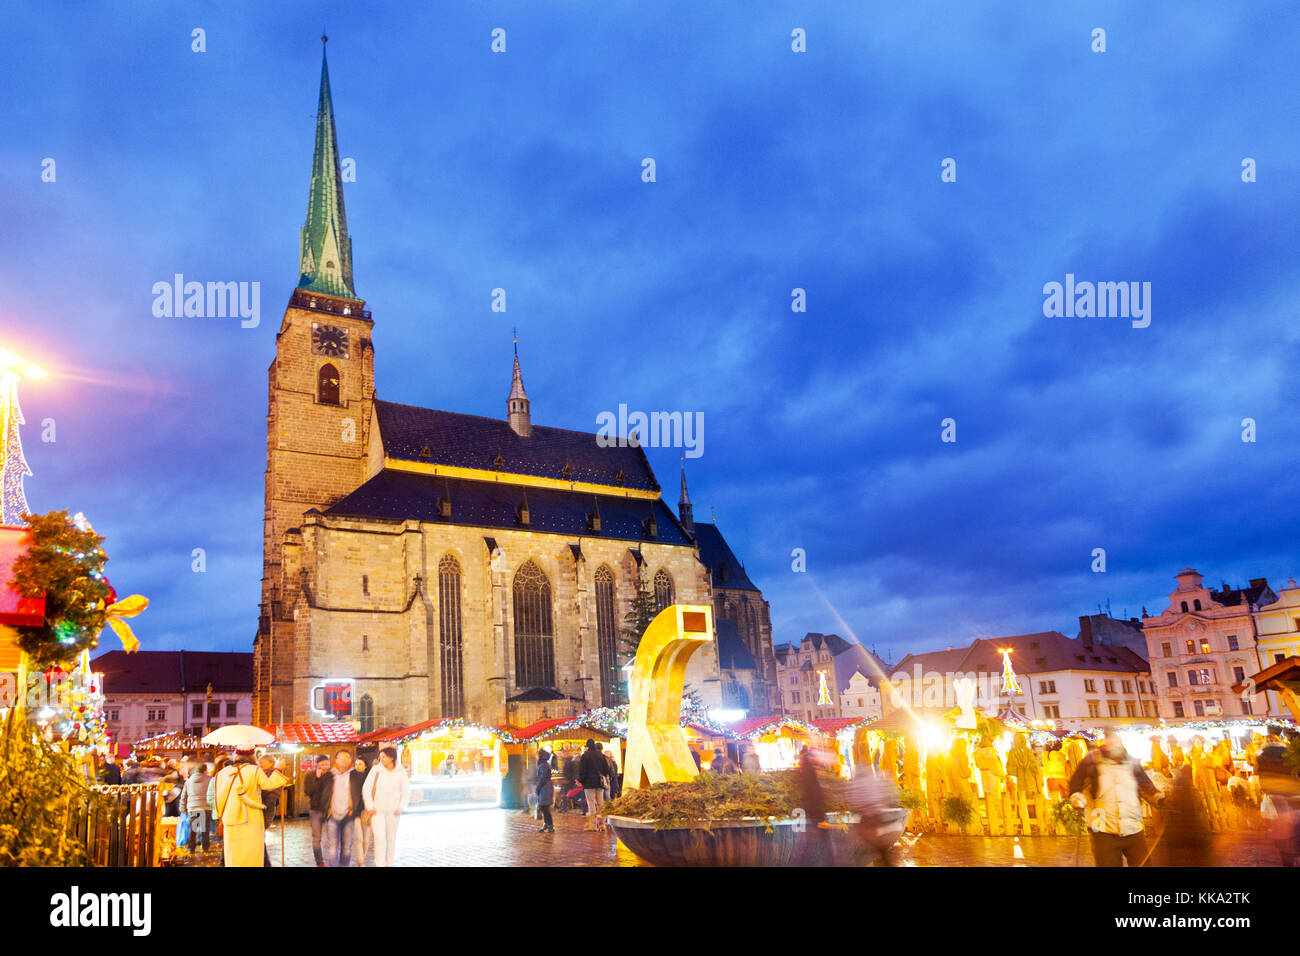 Marché de Noël, St Bartholomew. Cathédrale, place de la république, ville Plzen, République tchèque - foire traditionnelle dans le centre historique Banque D'Images